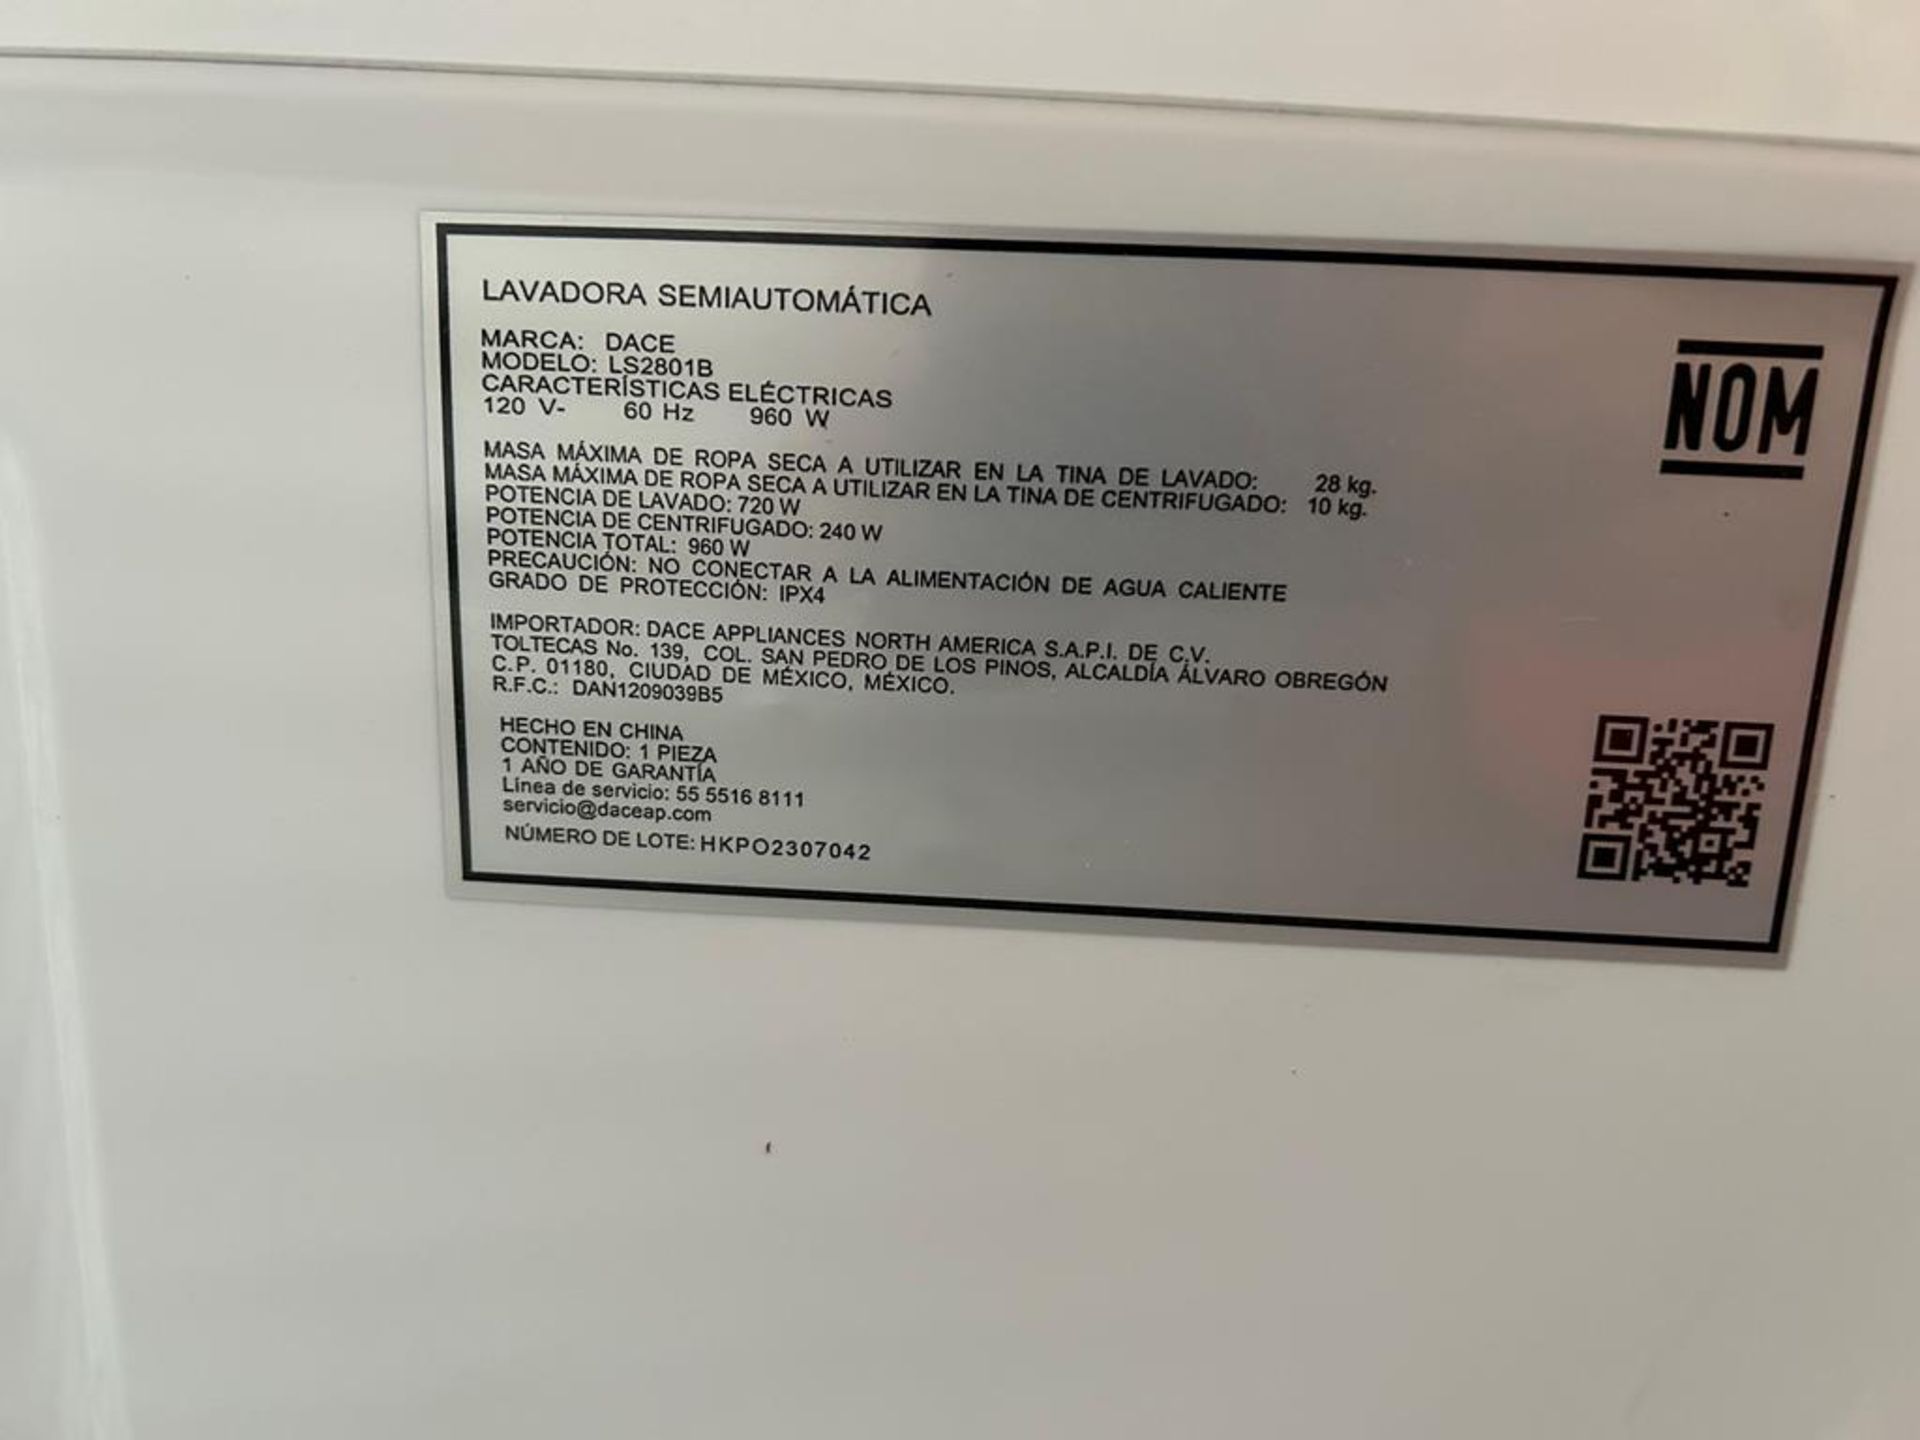 Lavadora de 28 KG, Marca DACE, Modelo LS2801B, Serie 07042, Color BLANCO (Equipo de devolución) - Image 11 of 14